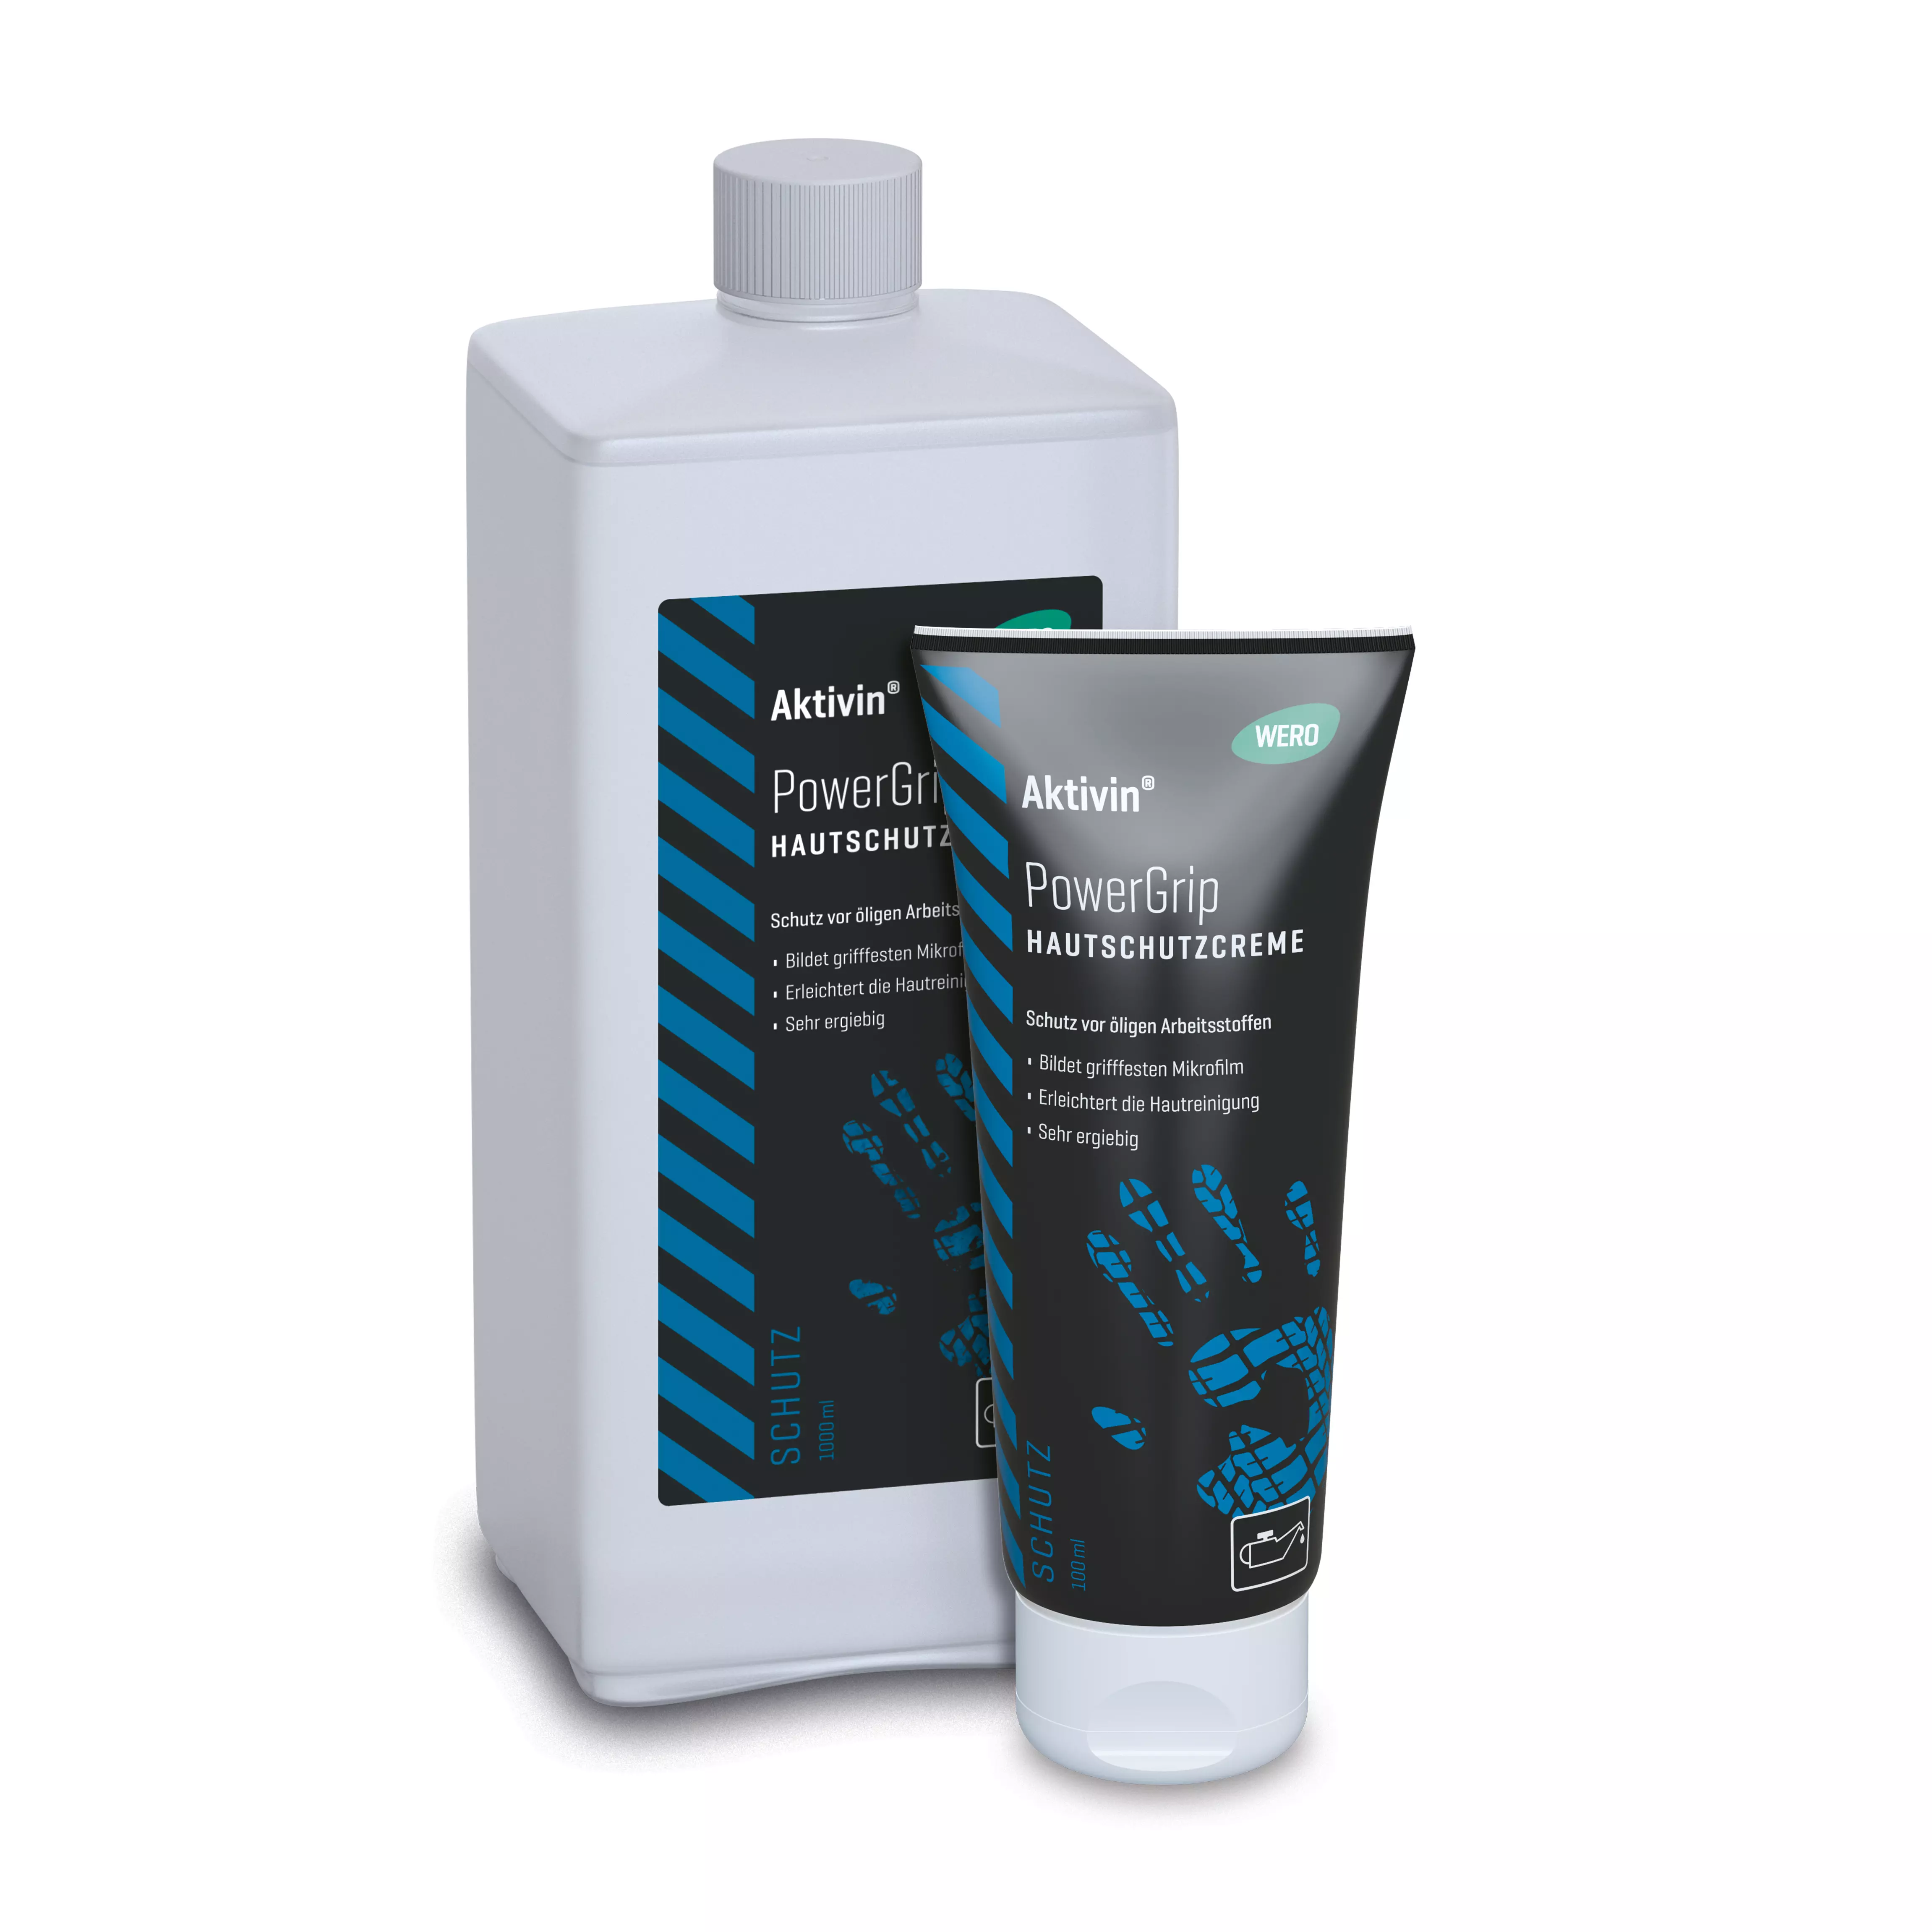 Skin protection cream Aktivin® PowerGrip - Euro bottle, 1,000 ml